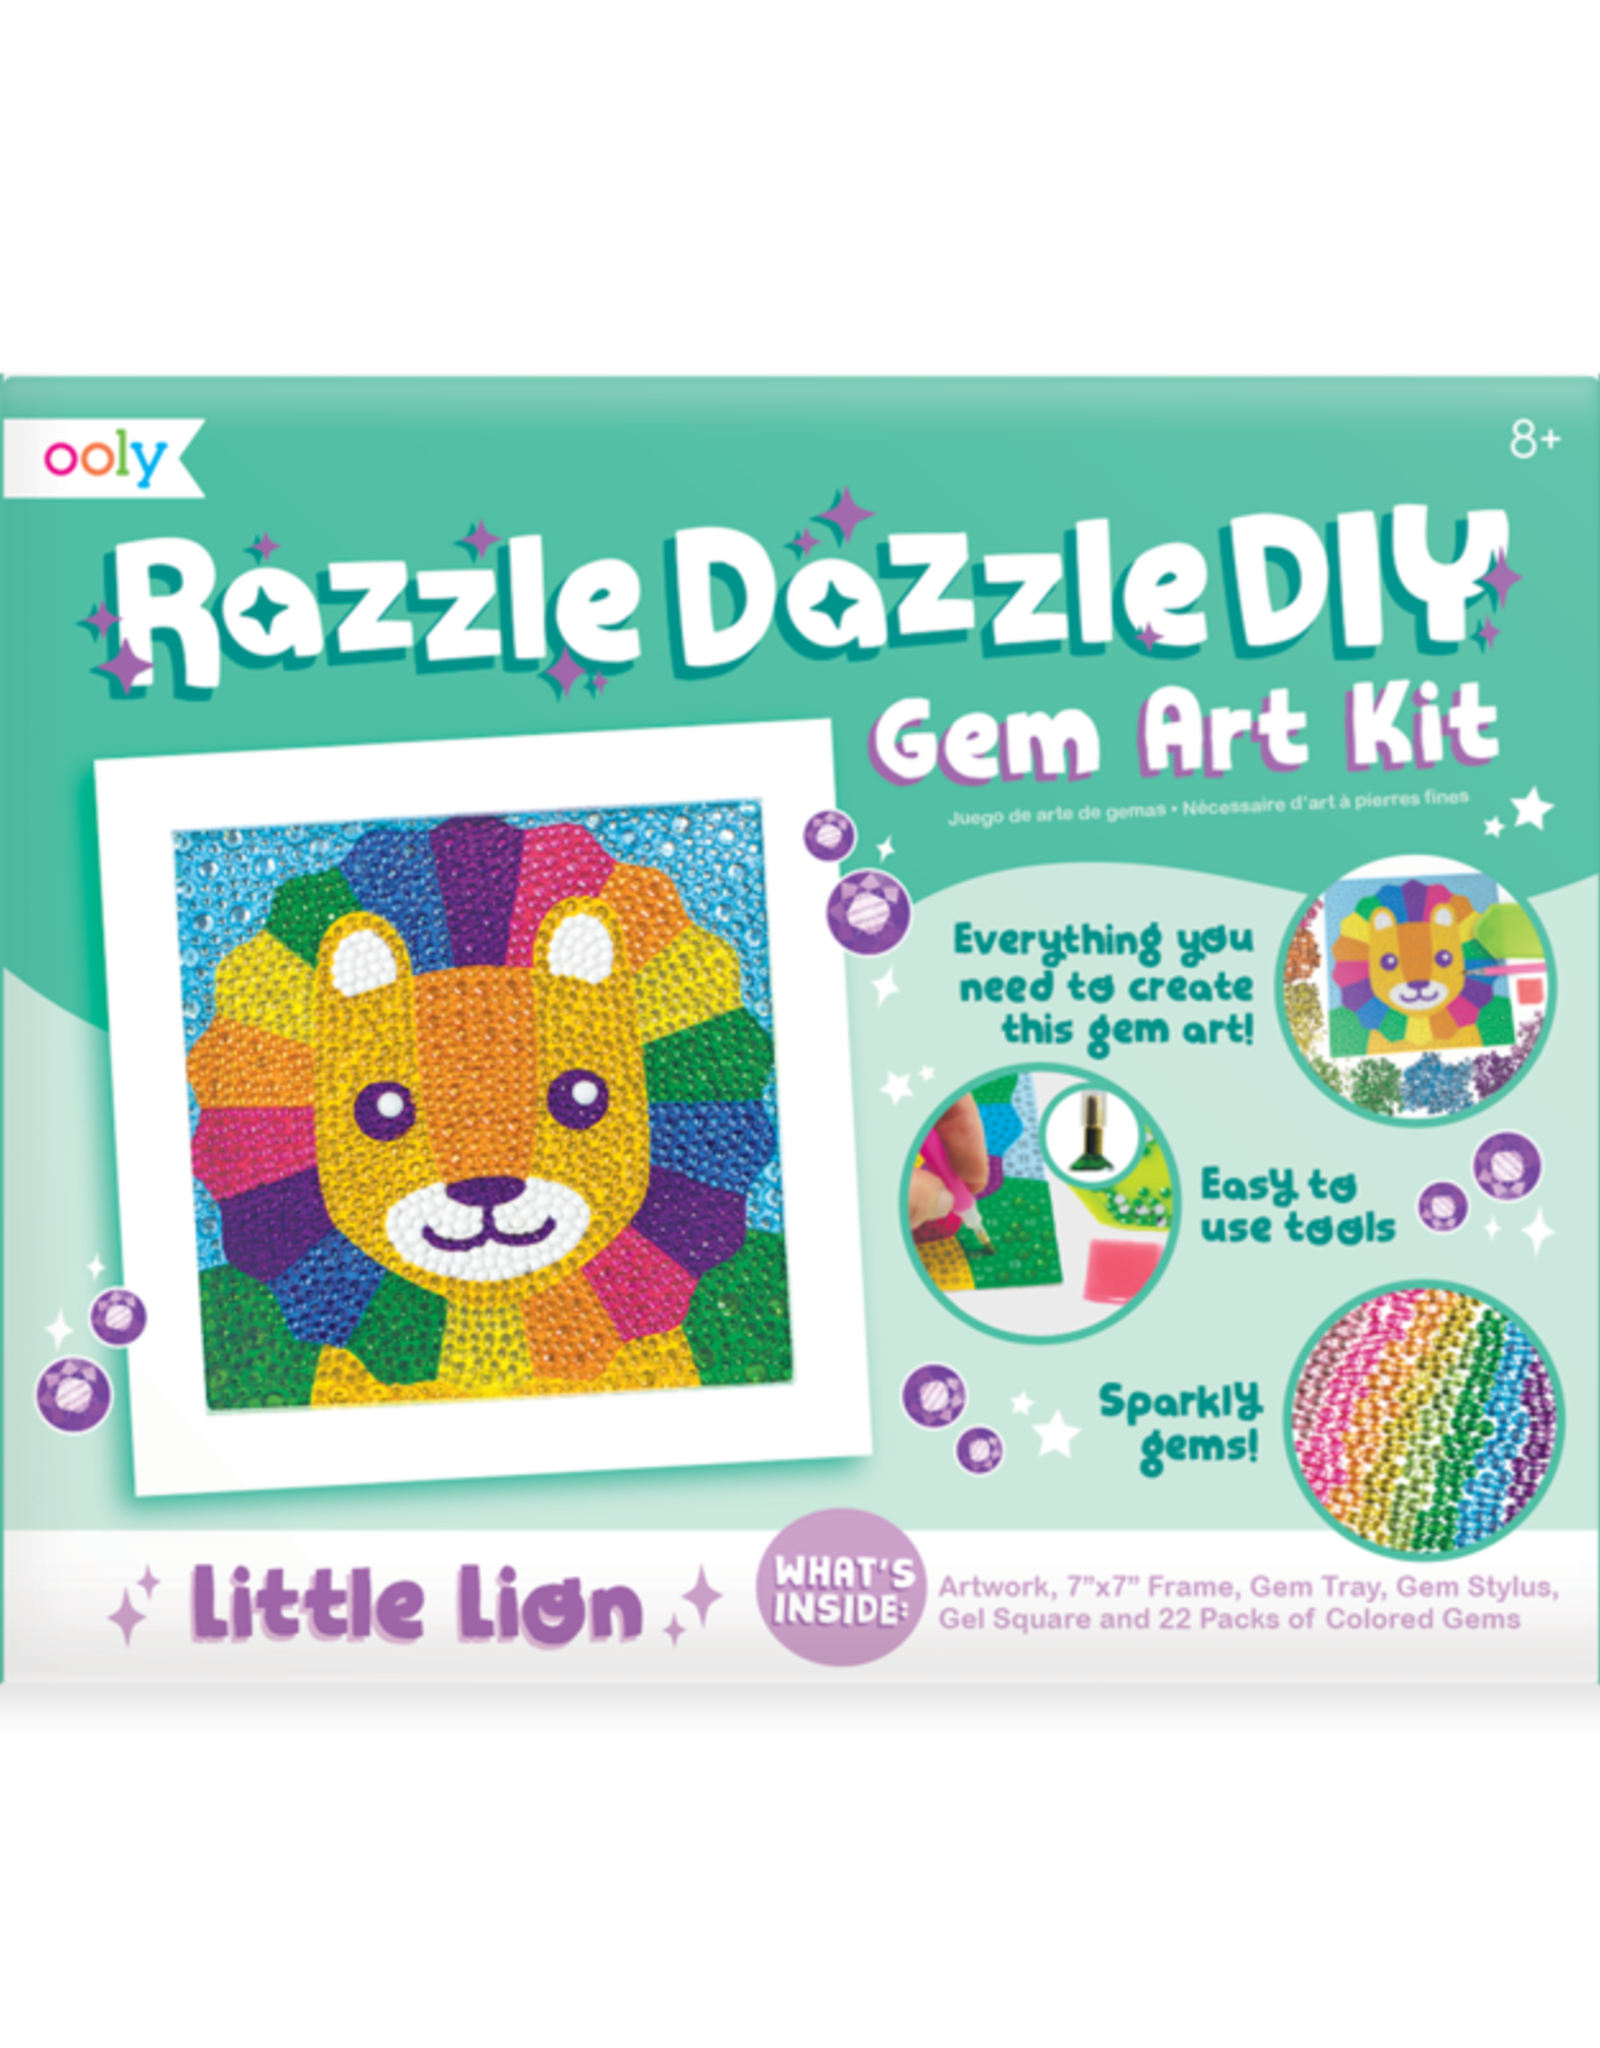 Ooly Razzle Dazzle DIY Gem Art Kit - Lil' Lion